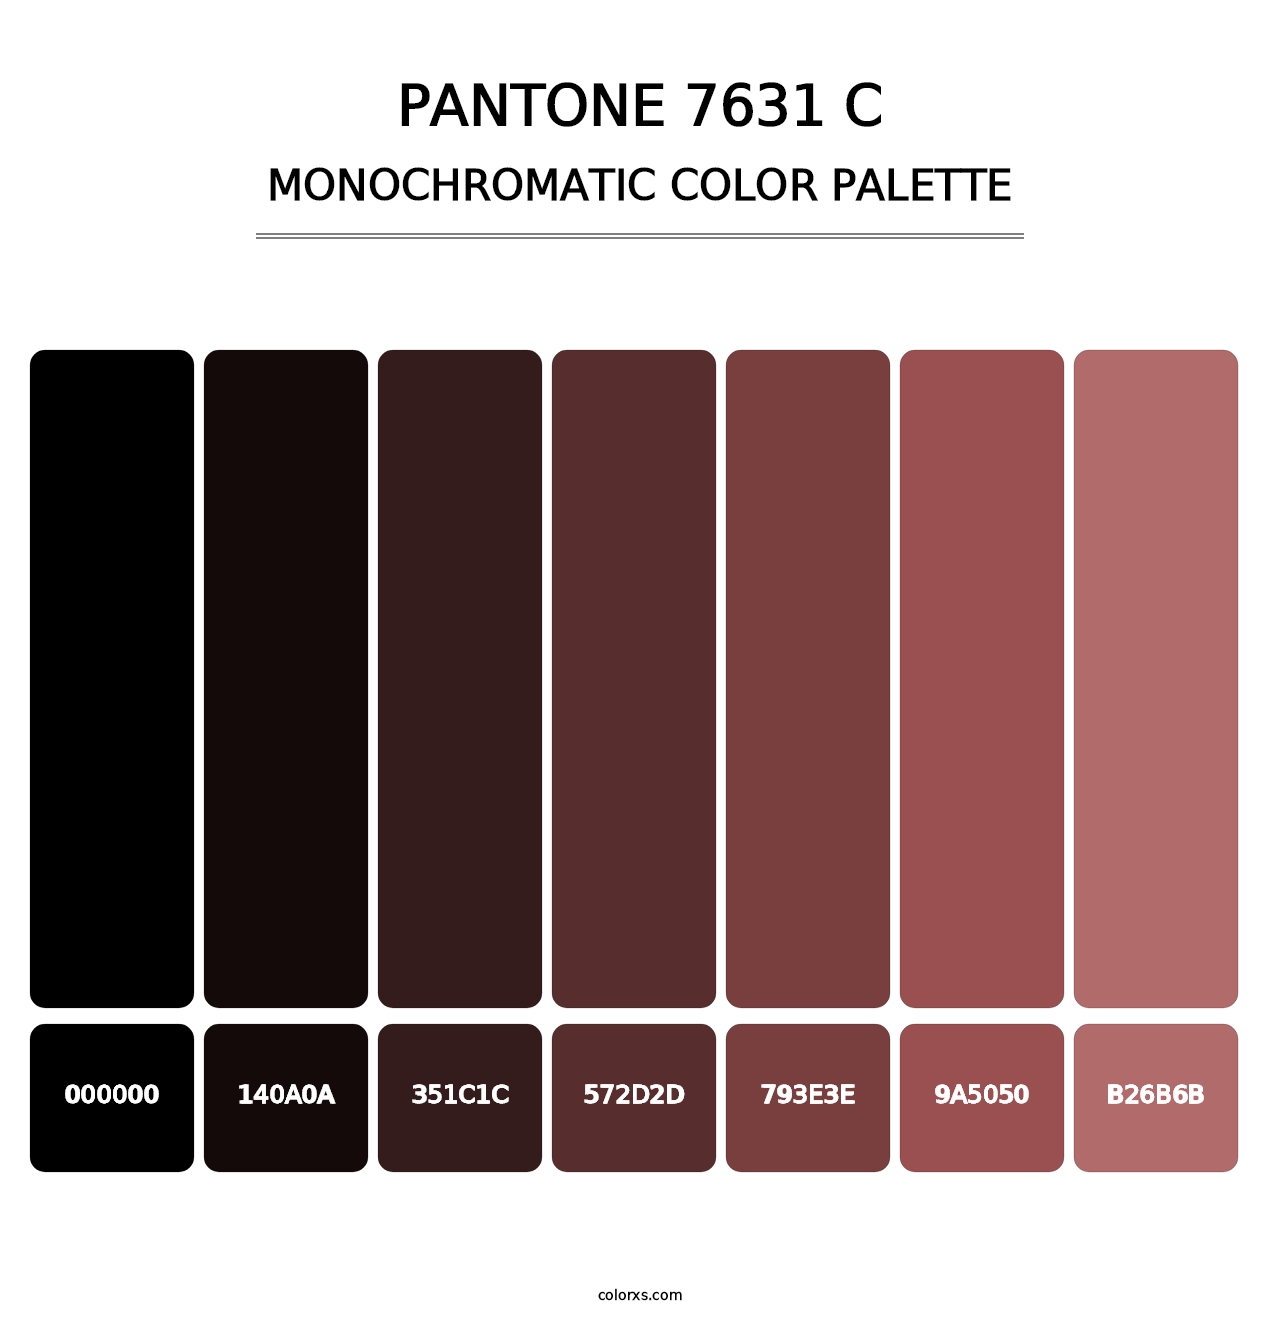 PANTONE 7631 C - Monochromatic Color Palette